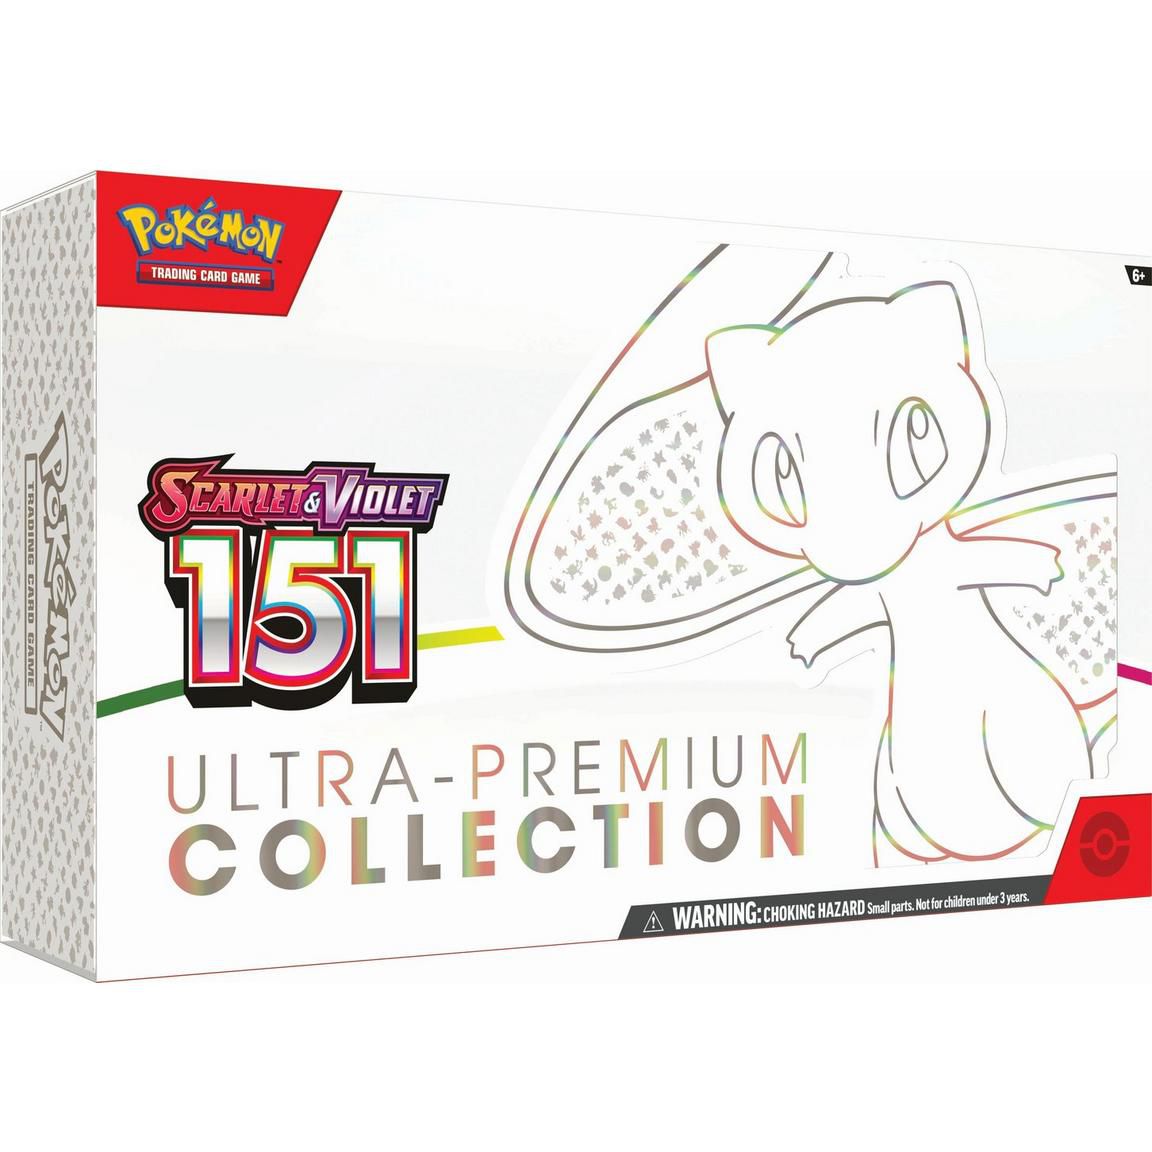 En stor låda med Pokémon Scarlet och Violet: 151 Collection TCG med Mew presenterad på framsidan